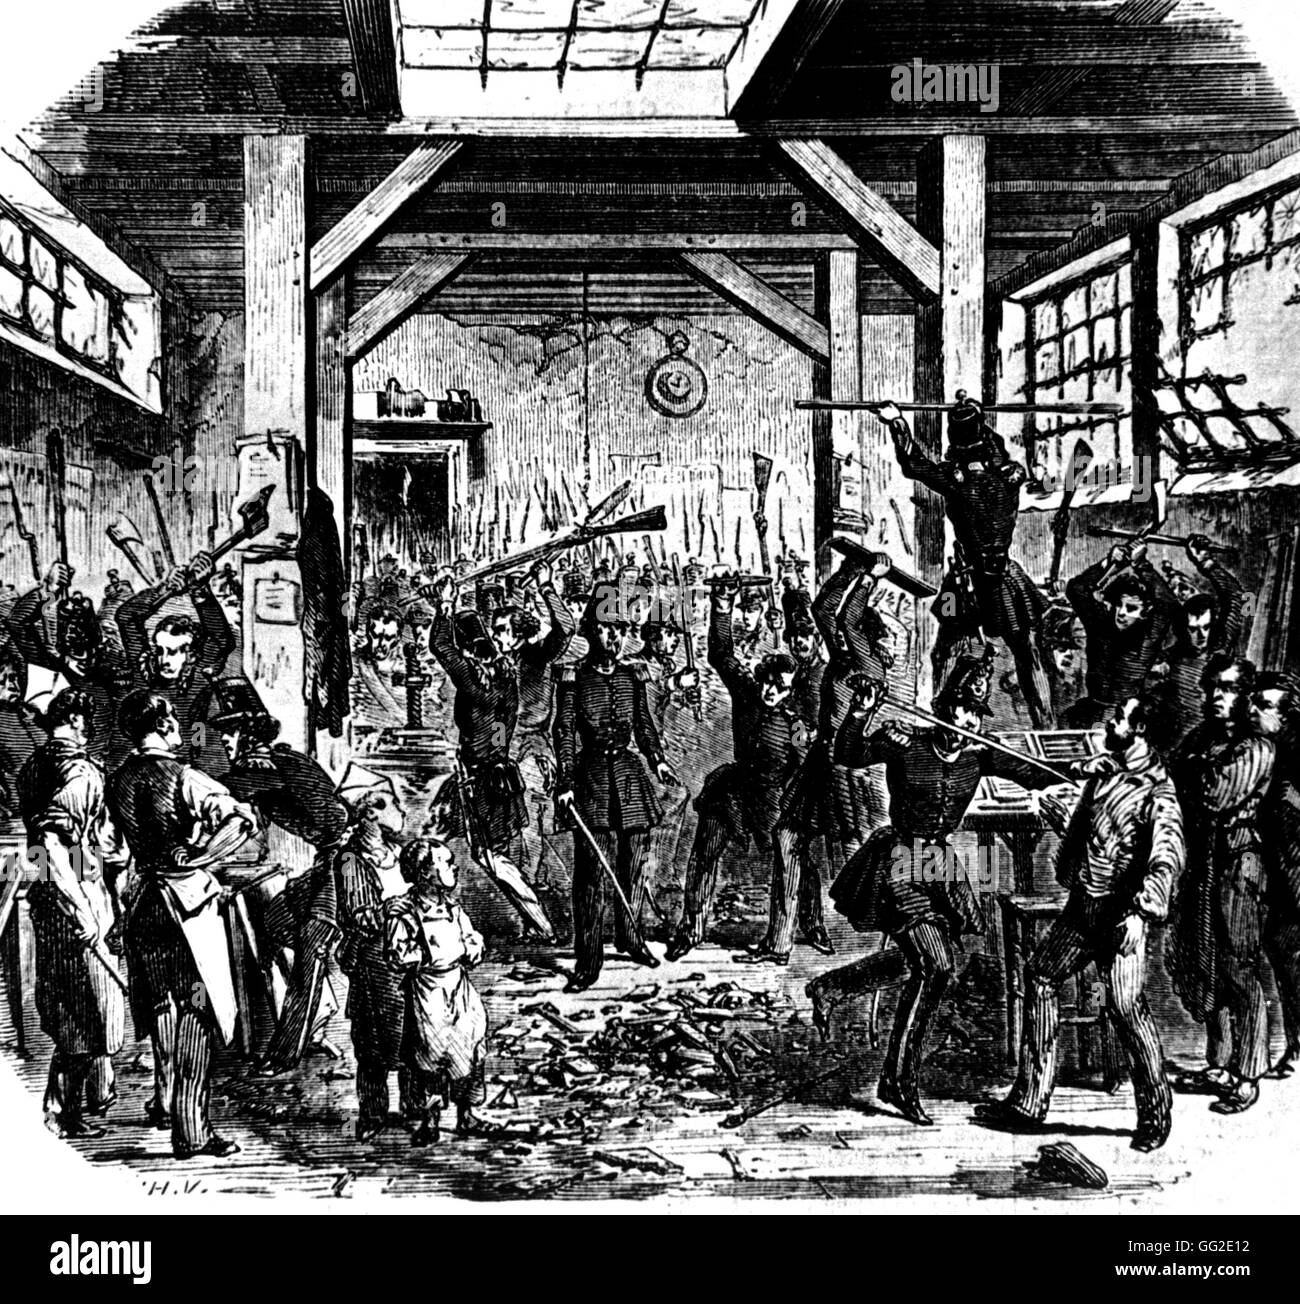 13 juin 1849 : Les hommes de la Garde nationale entrant dans le boute imprimerie qui imprime des journaux démocratiques 1849 France Paris. Musée Carnavalet Banque D'Images